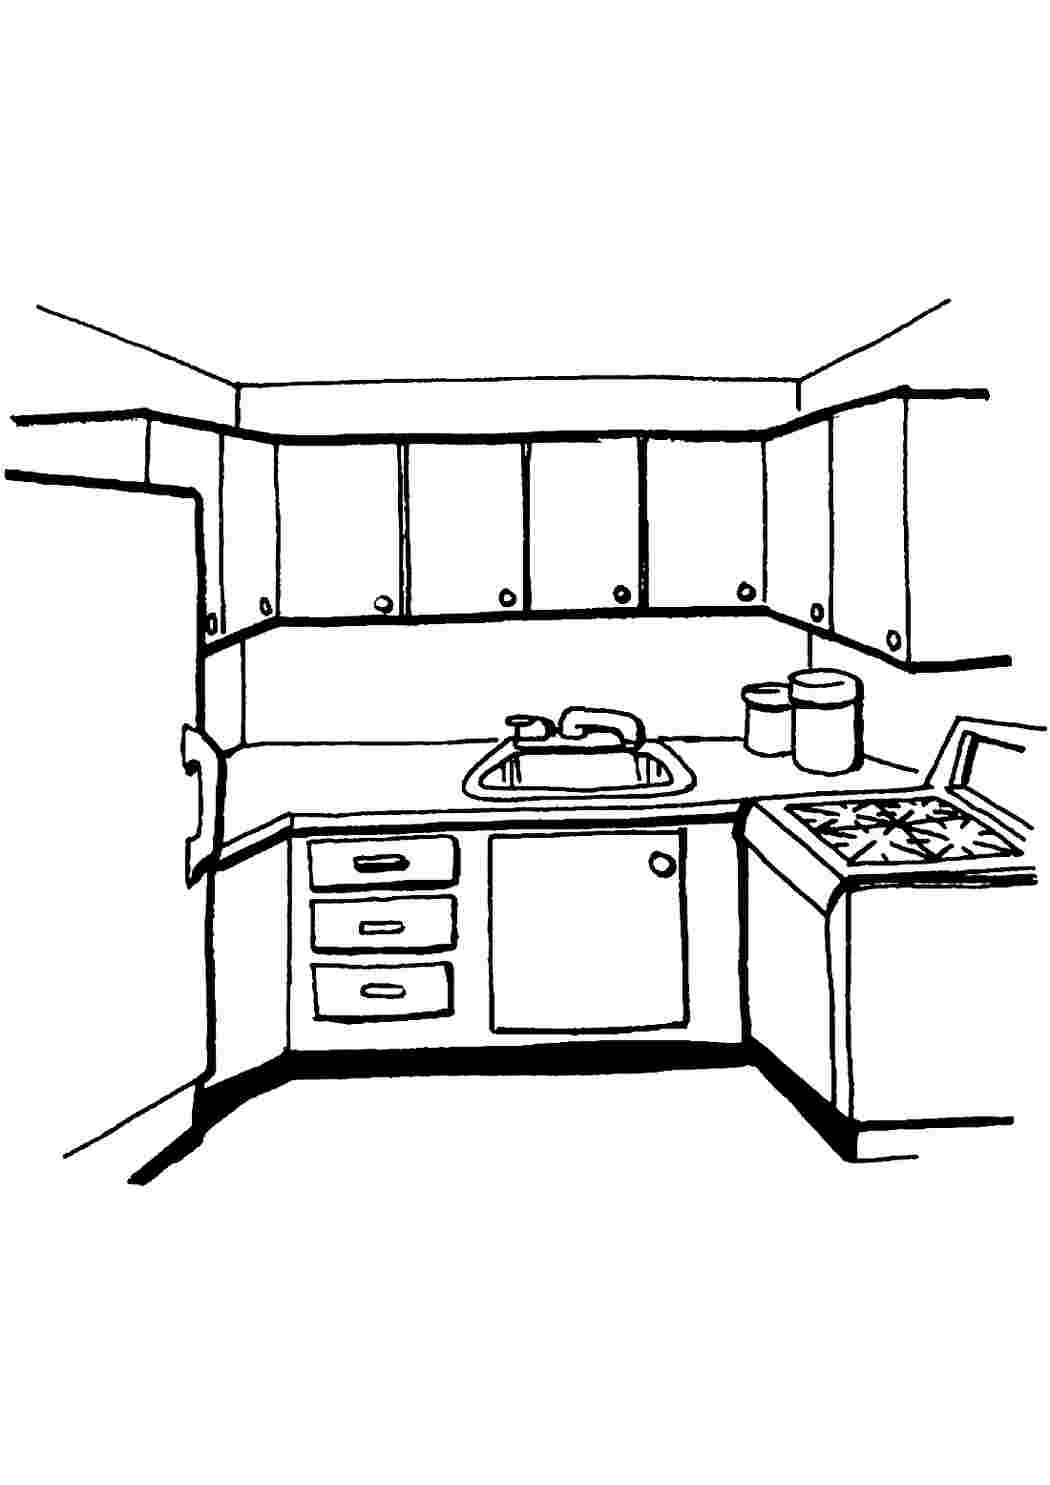 Изображения по запросу Кухонный шкаф раскраска - страница 3